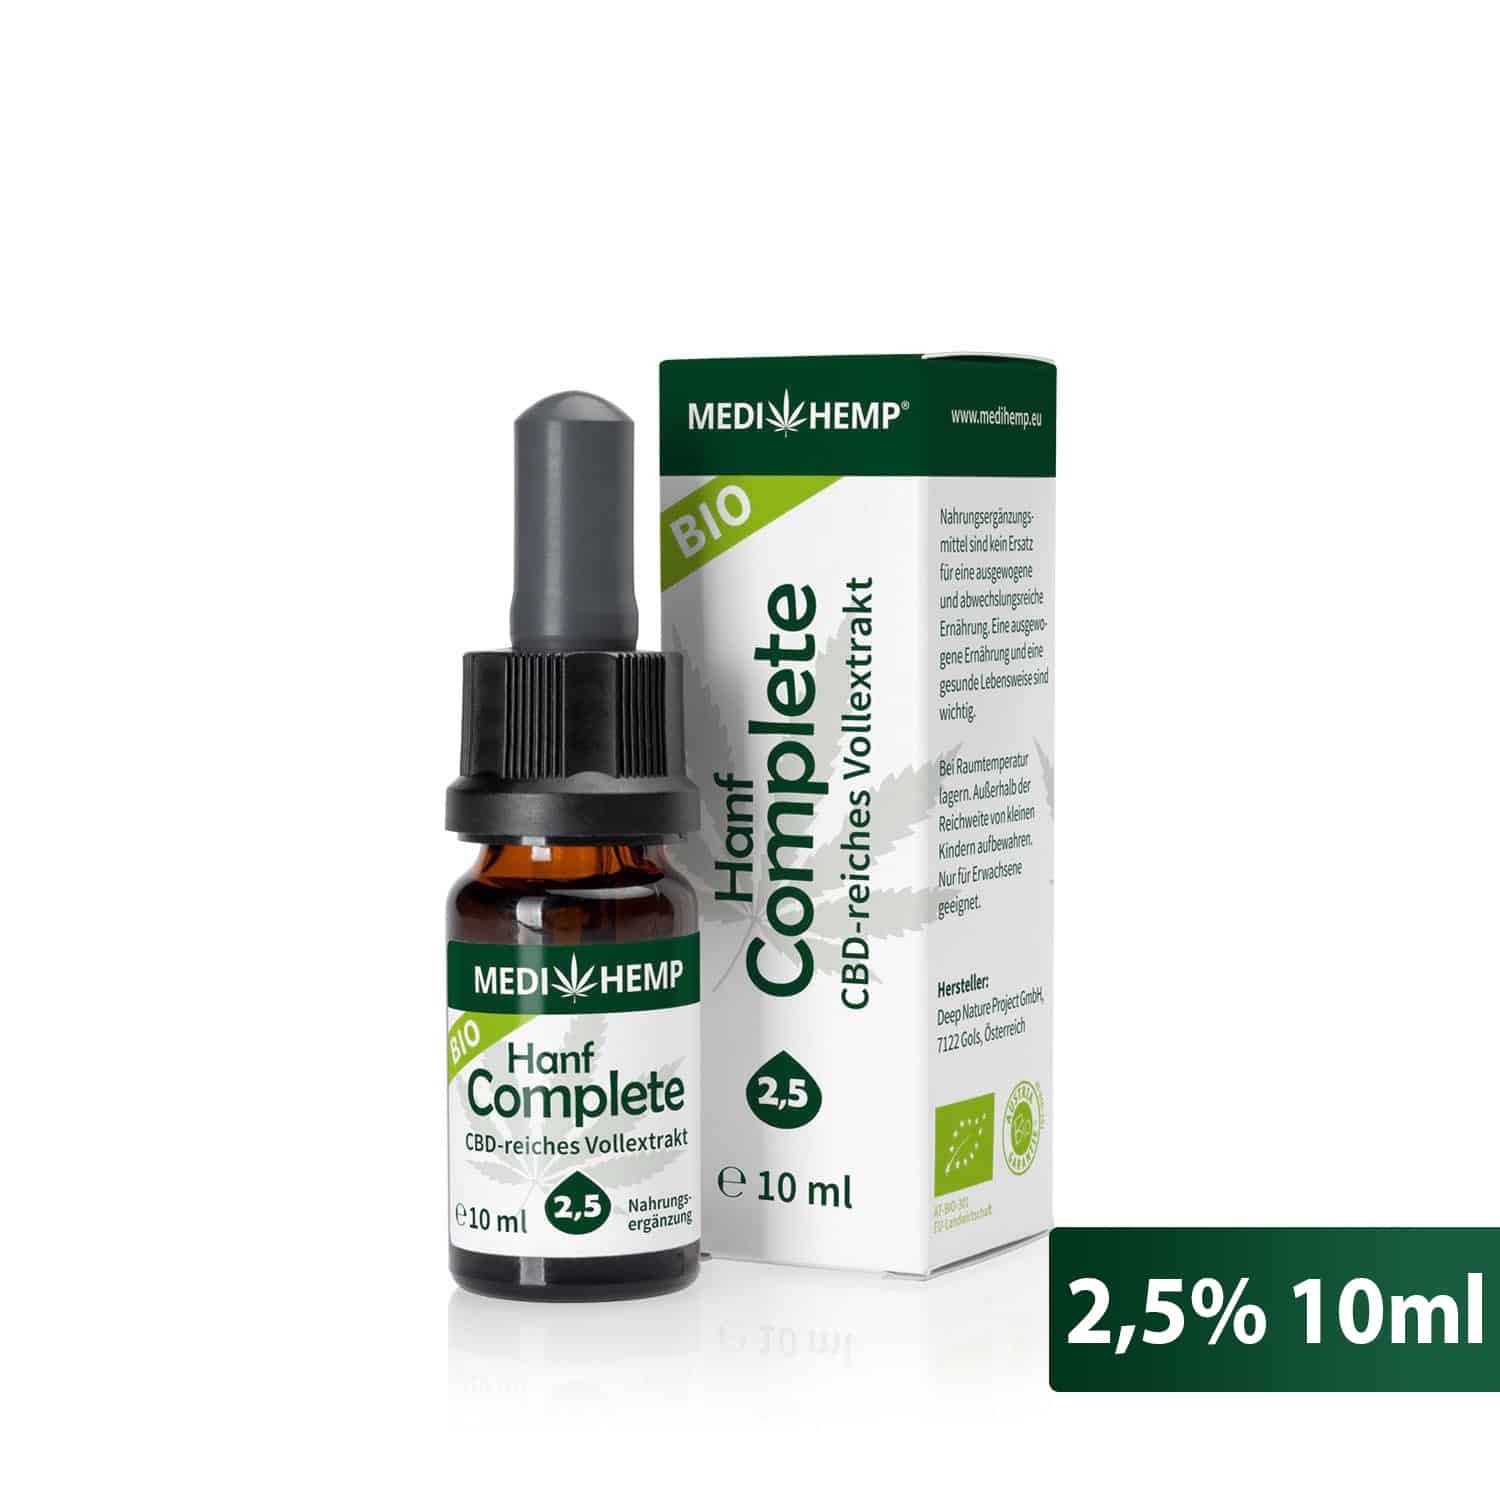 MEDIHEMP 2,5% Complete CBD olaj 10 ml üveg (250 mg) CBD-ben gazdag teljes spektrumú kivonat